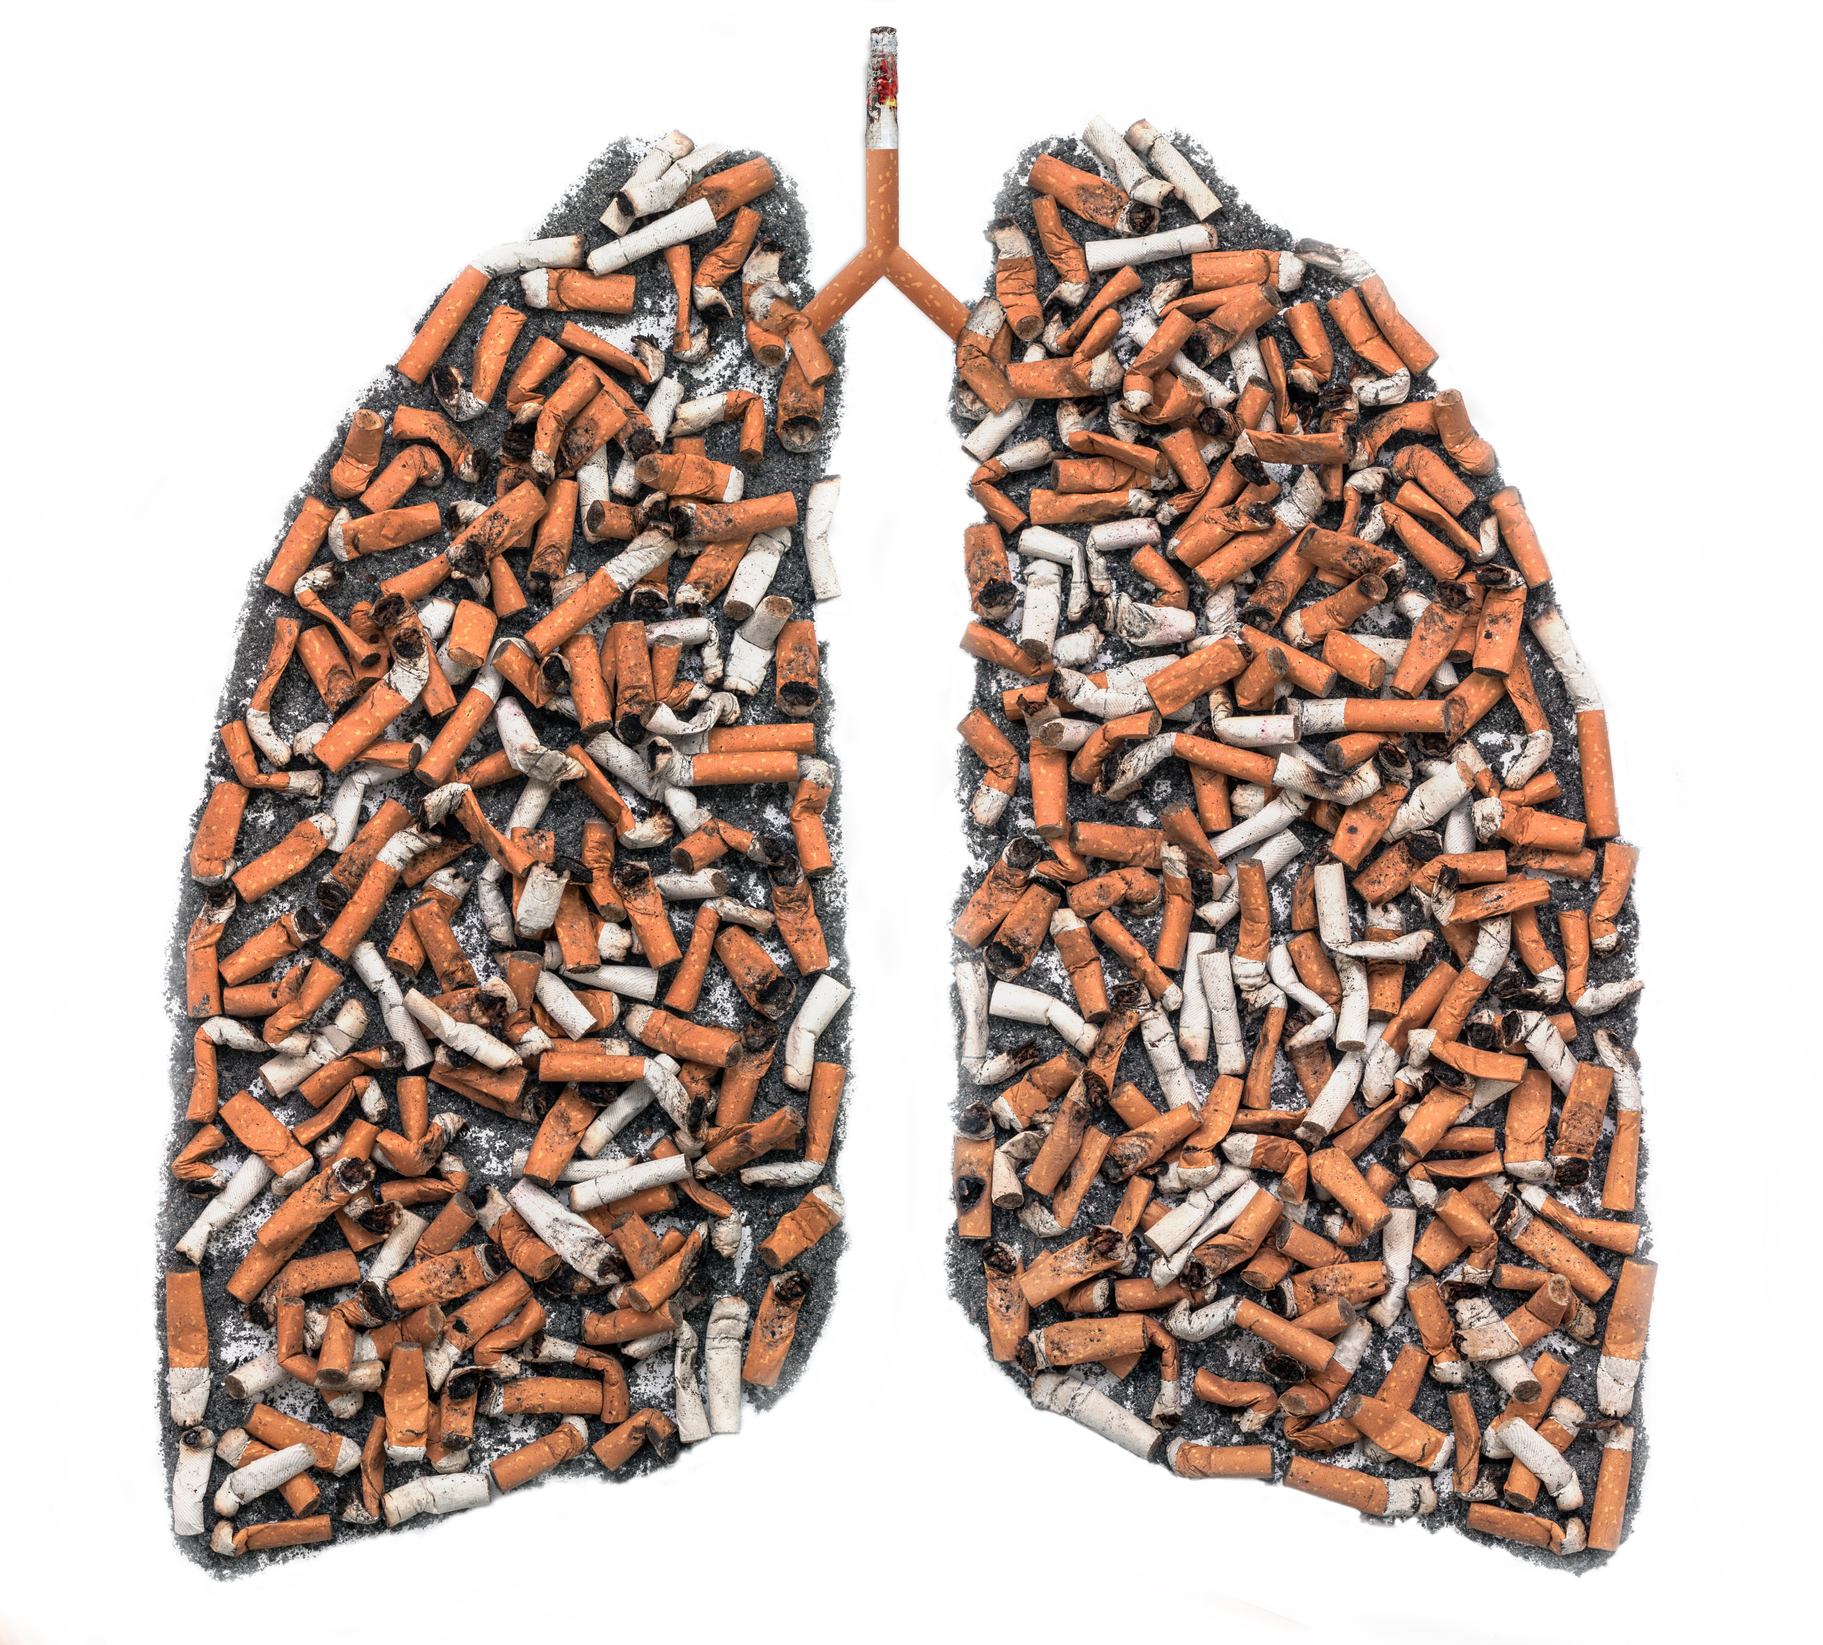 Fajčiarske pľúca - cigaretové ohorky znázorňujú znečistenie pľúc pri fajčení